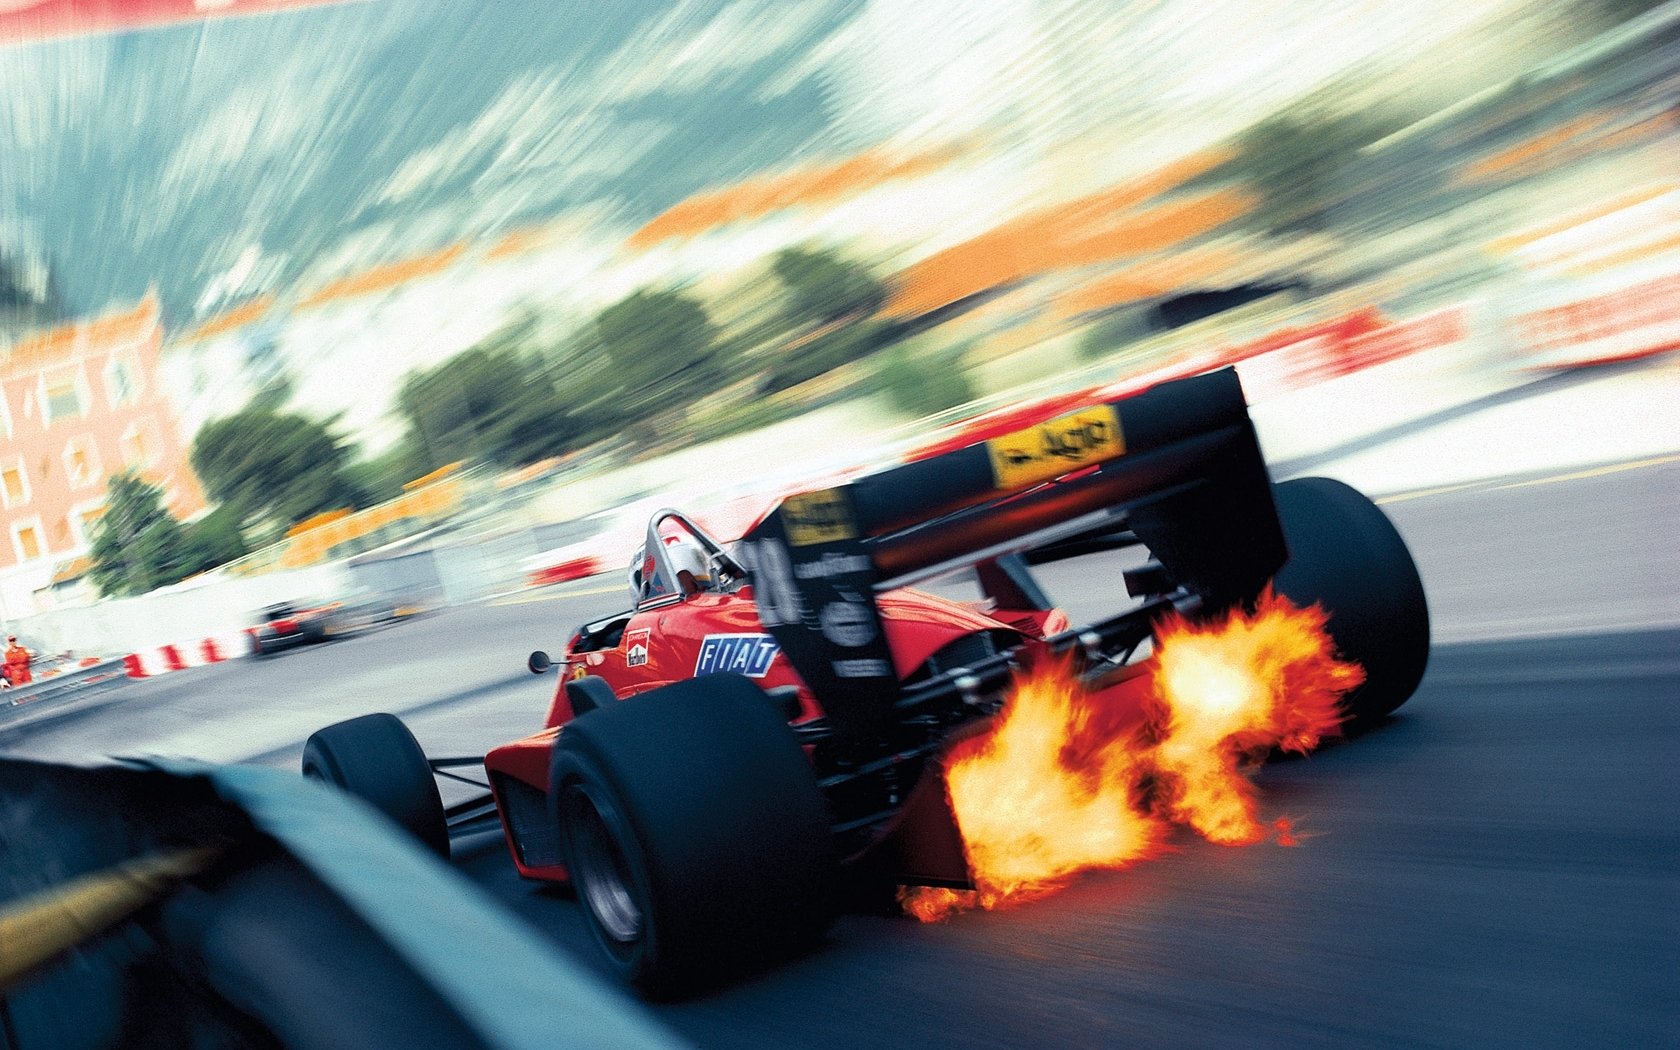 F1, Công thức 1, đua xe F1, đua xe công thức 1, thể thao tốc độ, tốc độ, đua xe